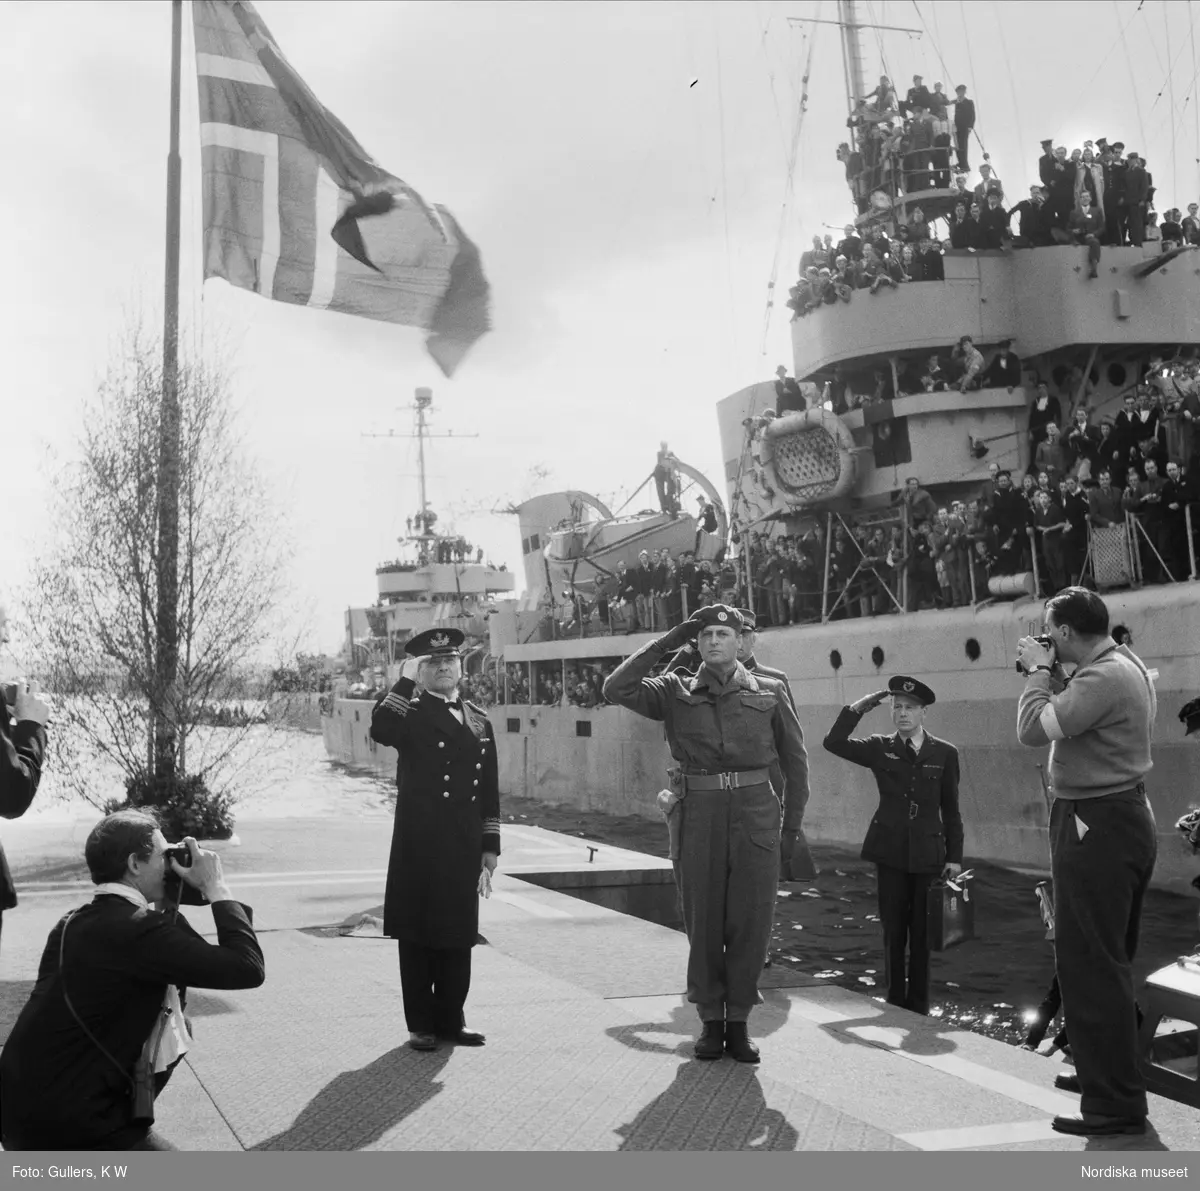 Kronprins Olav anländer till Norge efter exilen under andra världskriget.